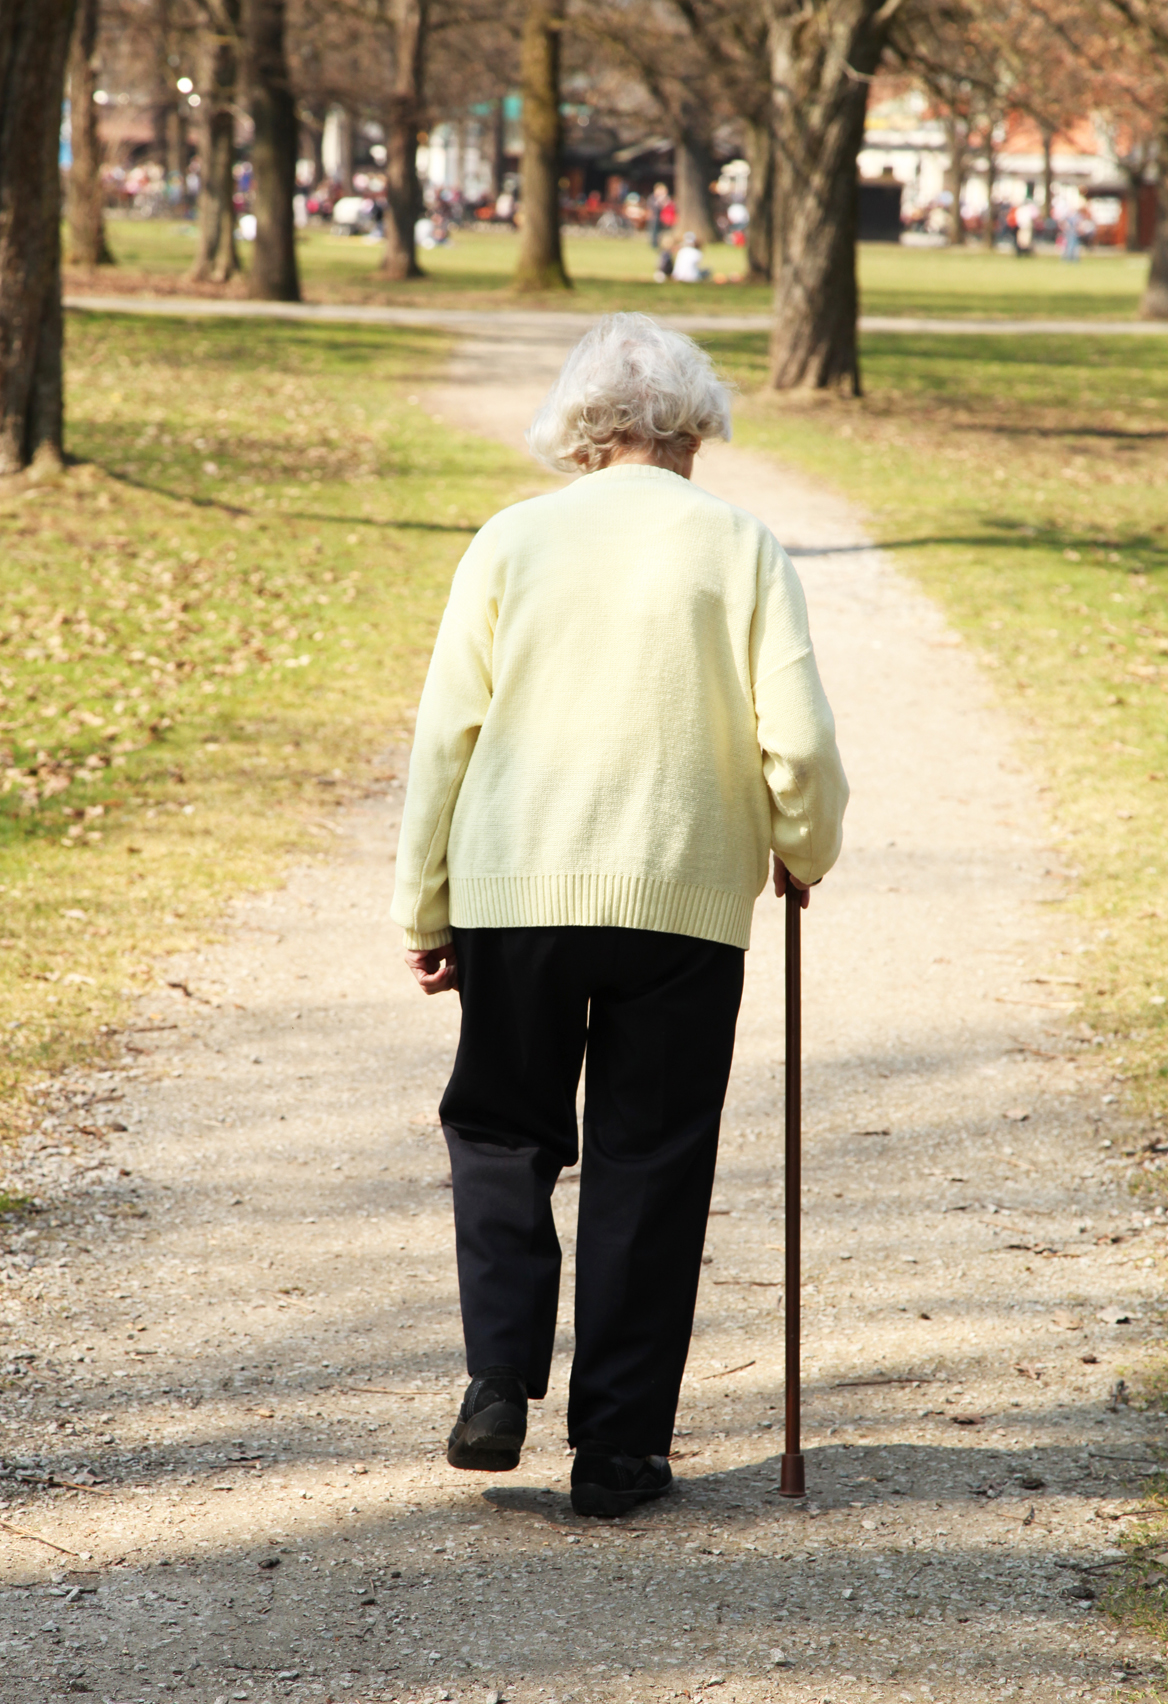 Personnes âgées : Le montant de l'APA revu à la hausse en janvier 2015